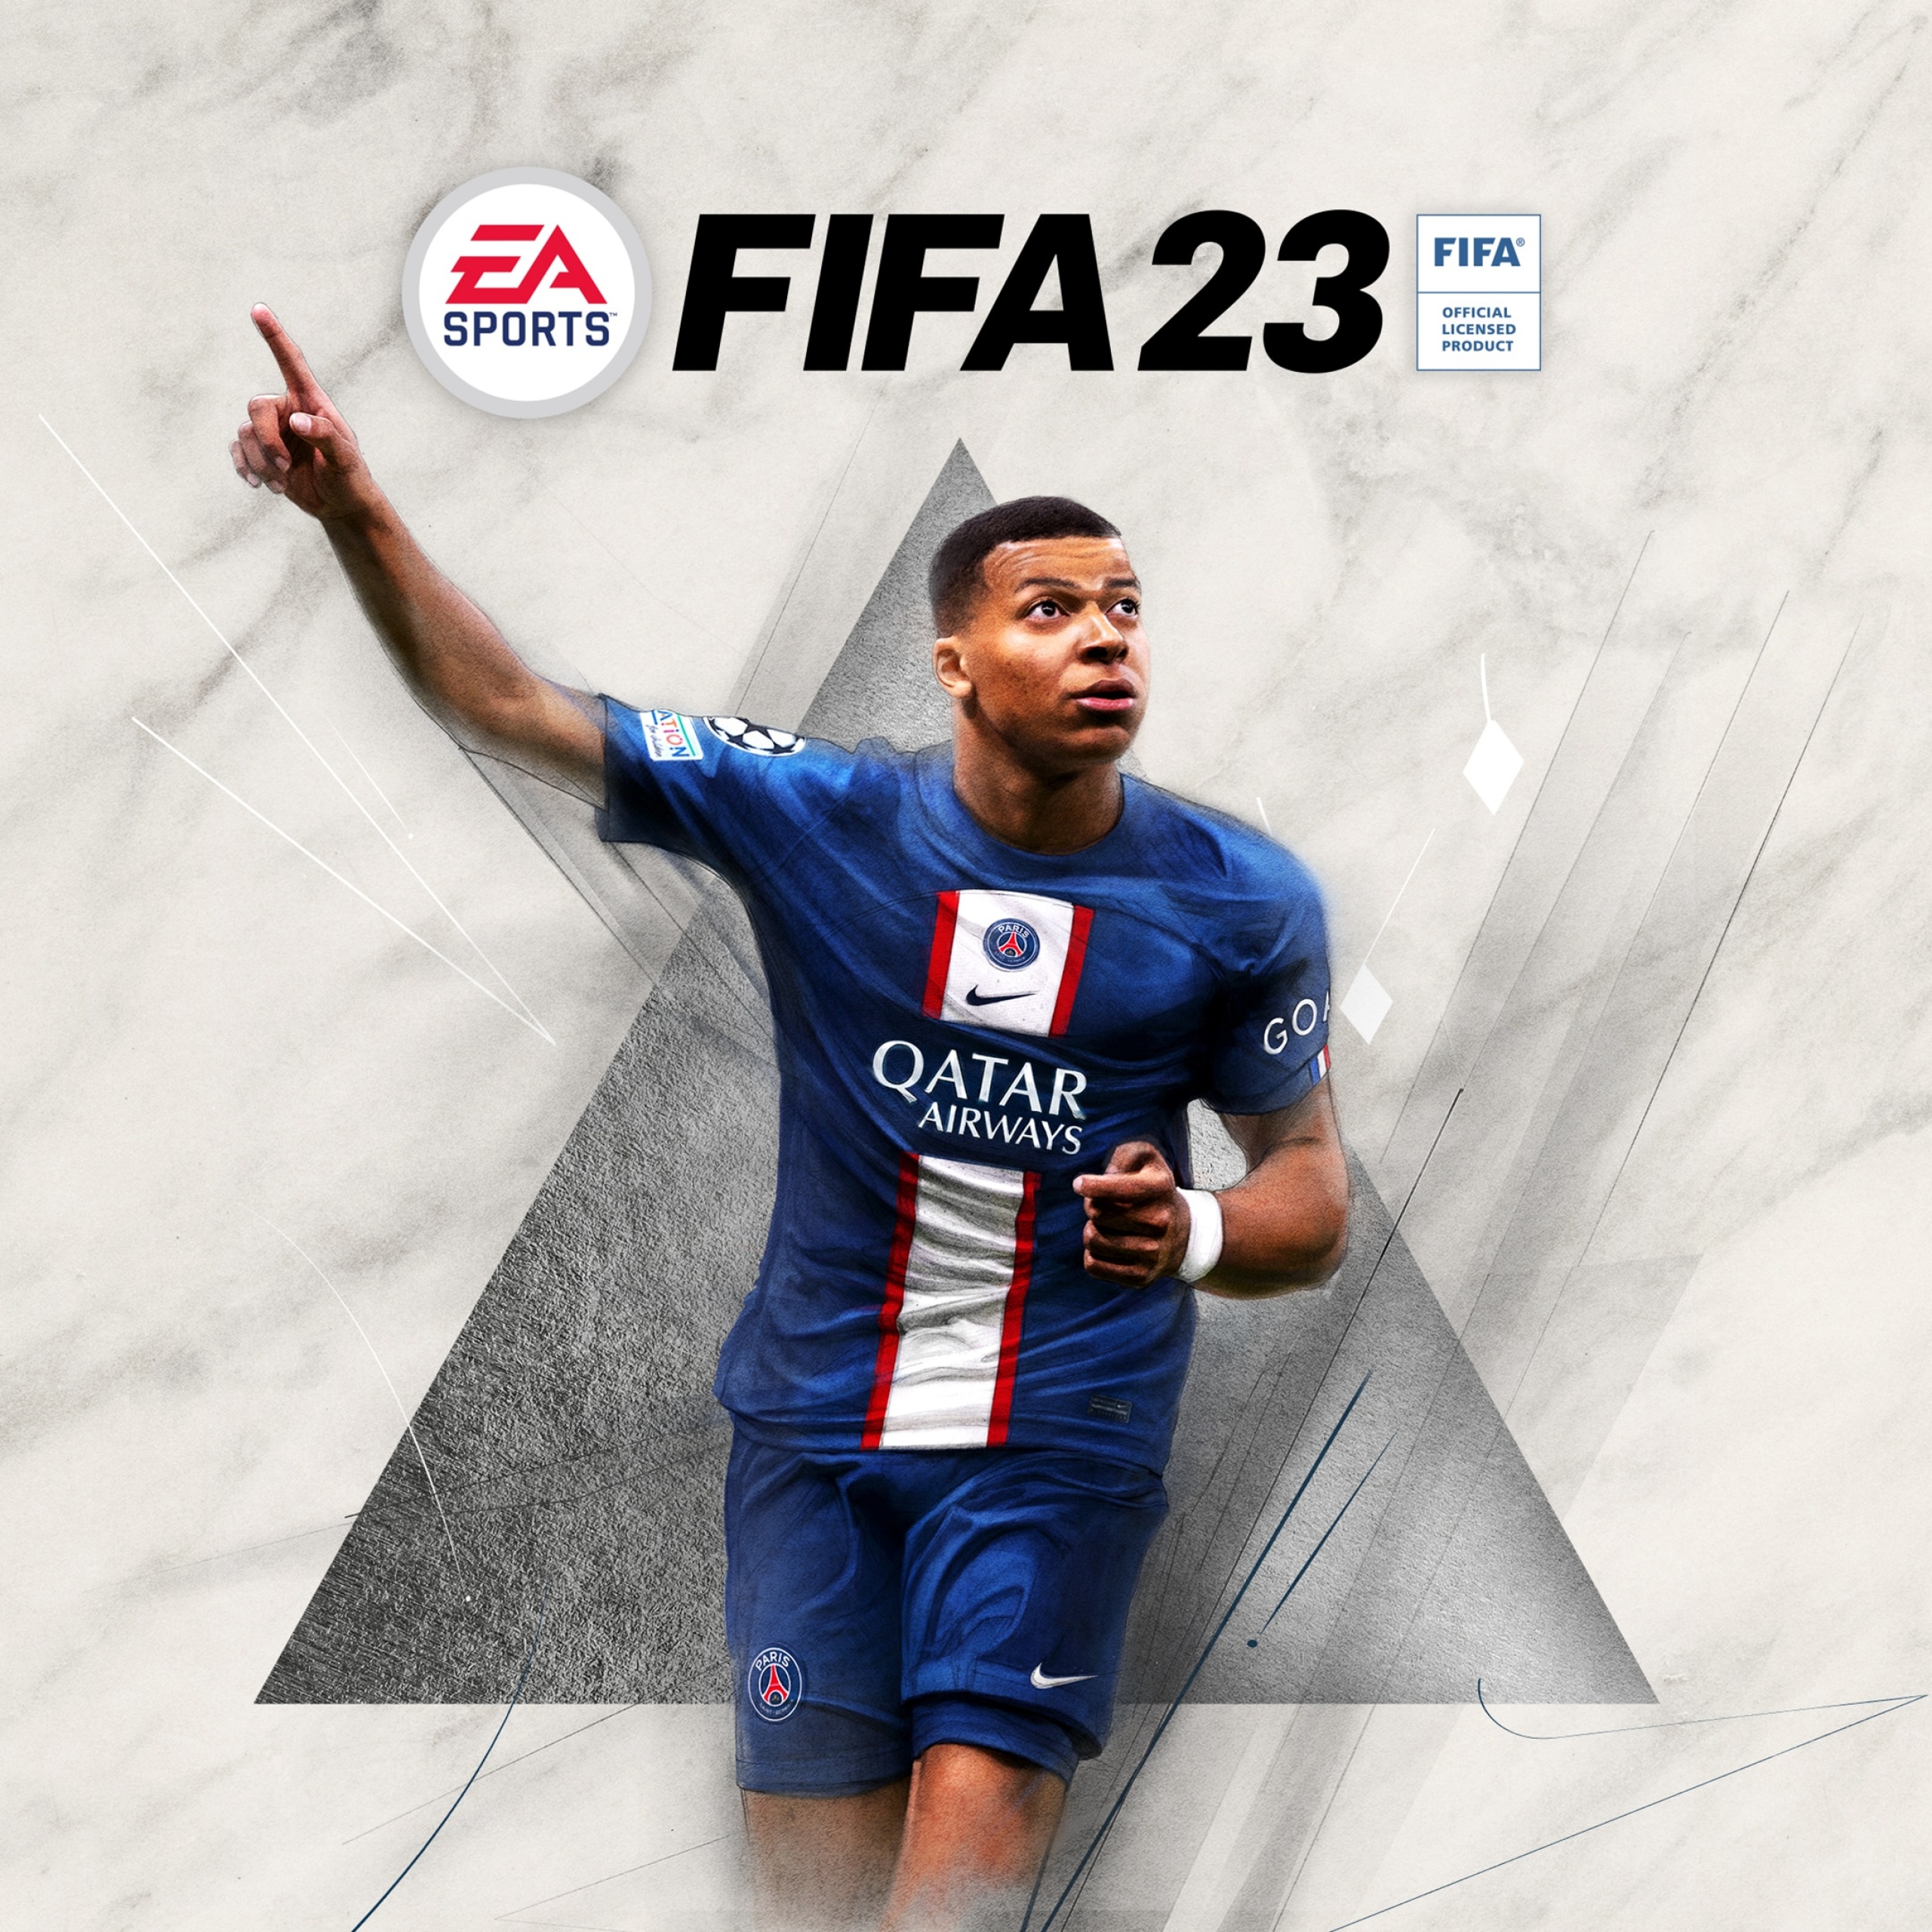 Hình nền FIFA 23 4K đẹp mắt sẽ khiến cho màn hình của bạn trở nên sống động và đầy màu sắc. Đừng bỏ qua cơ hội để tải xuống những hình nền sống động và đầy sáng tạo nhất để trang trí cho máy tính của bạn.